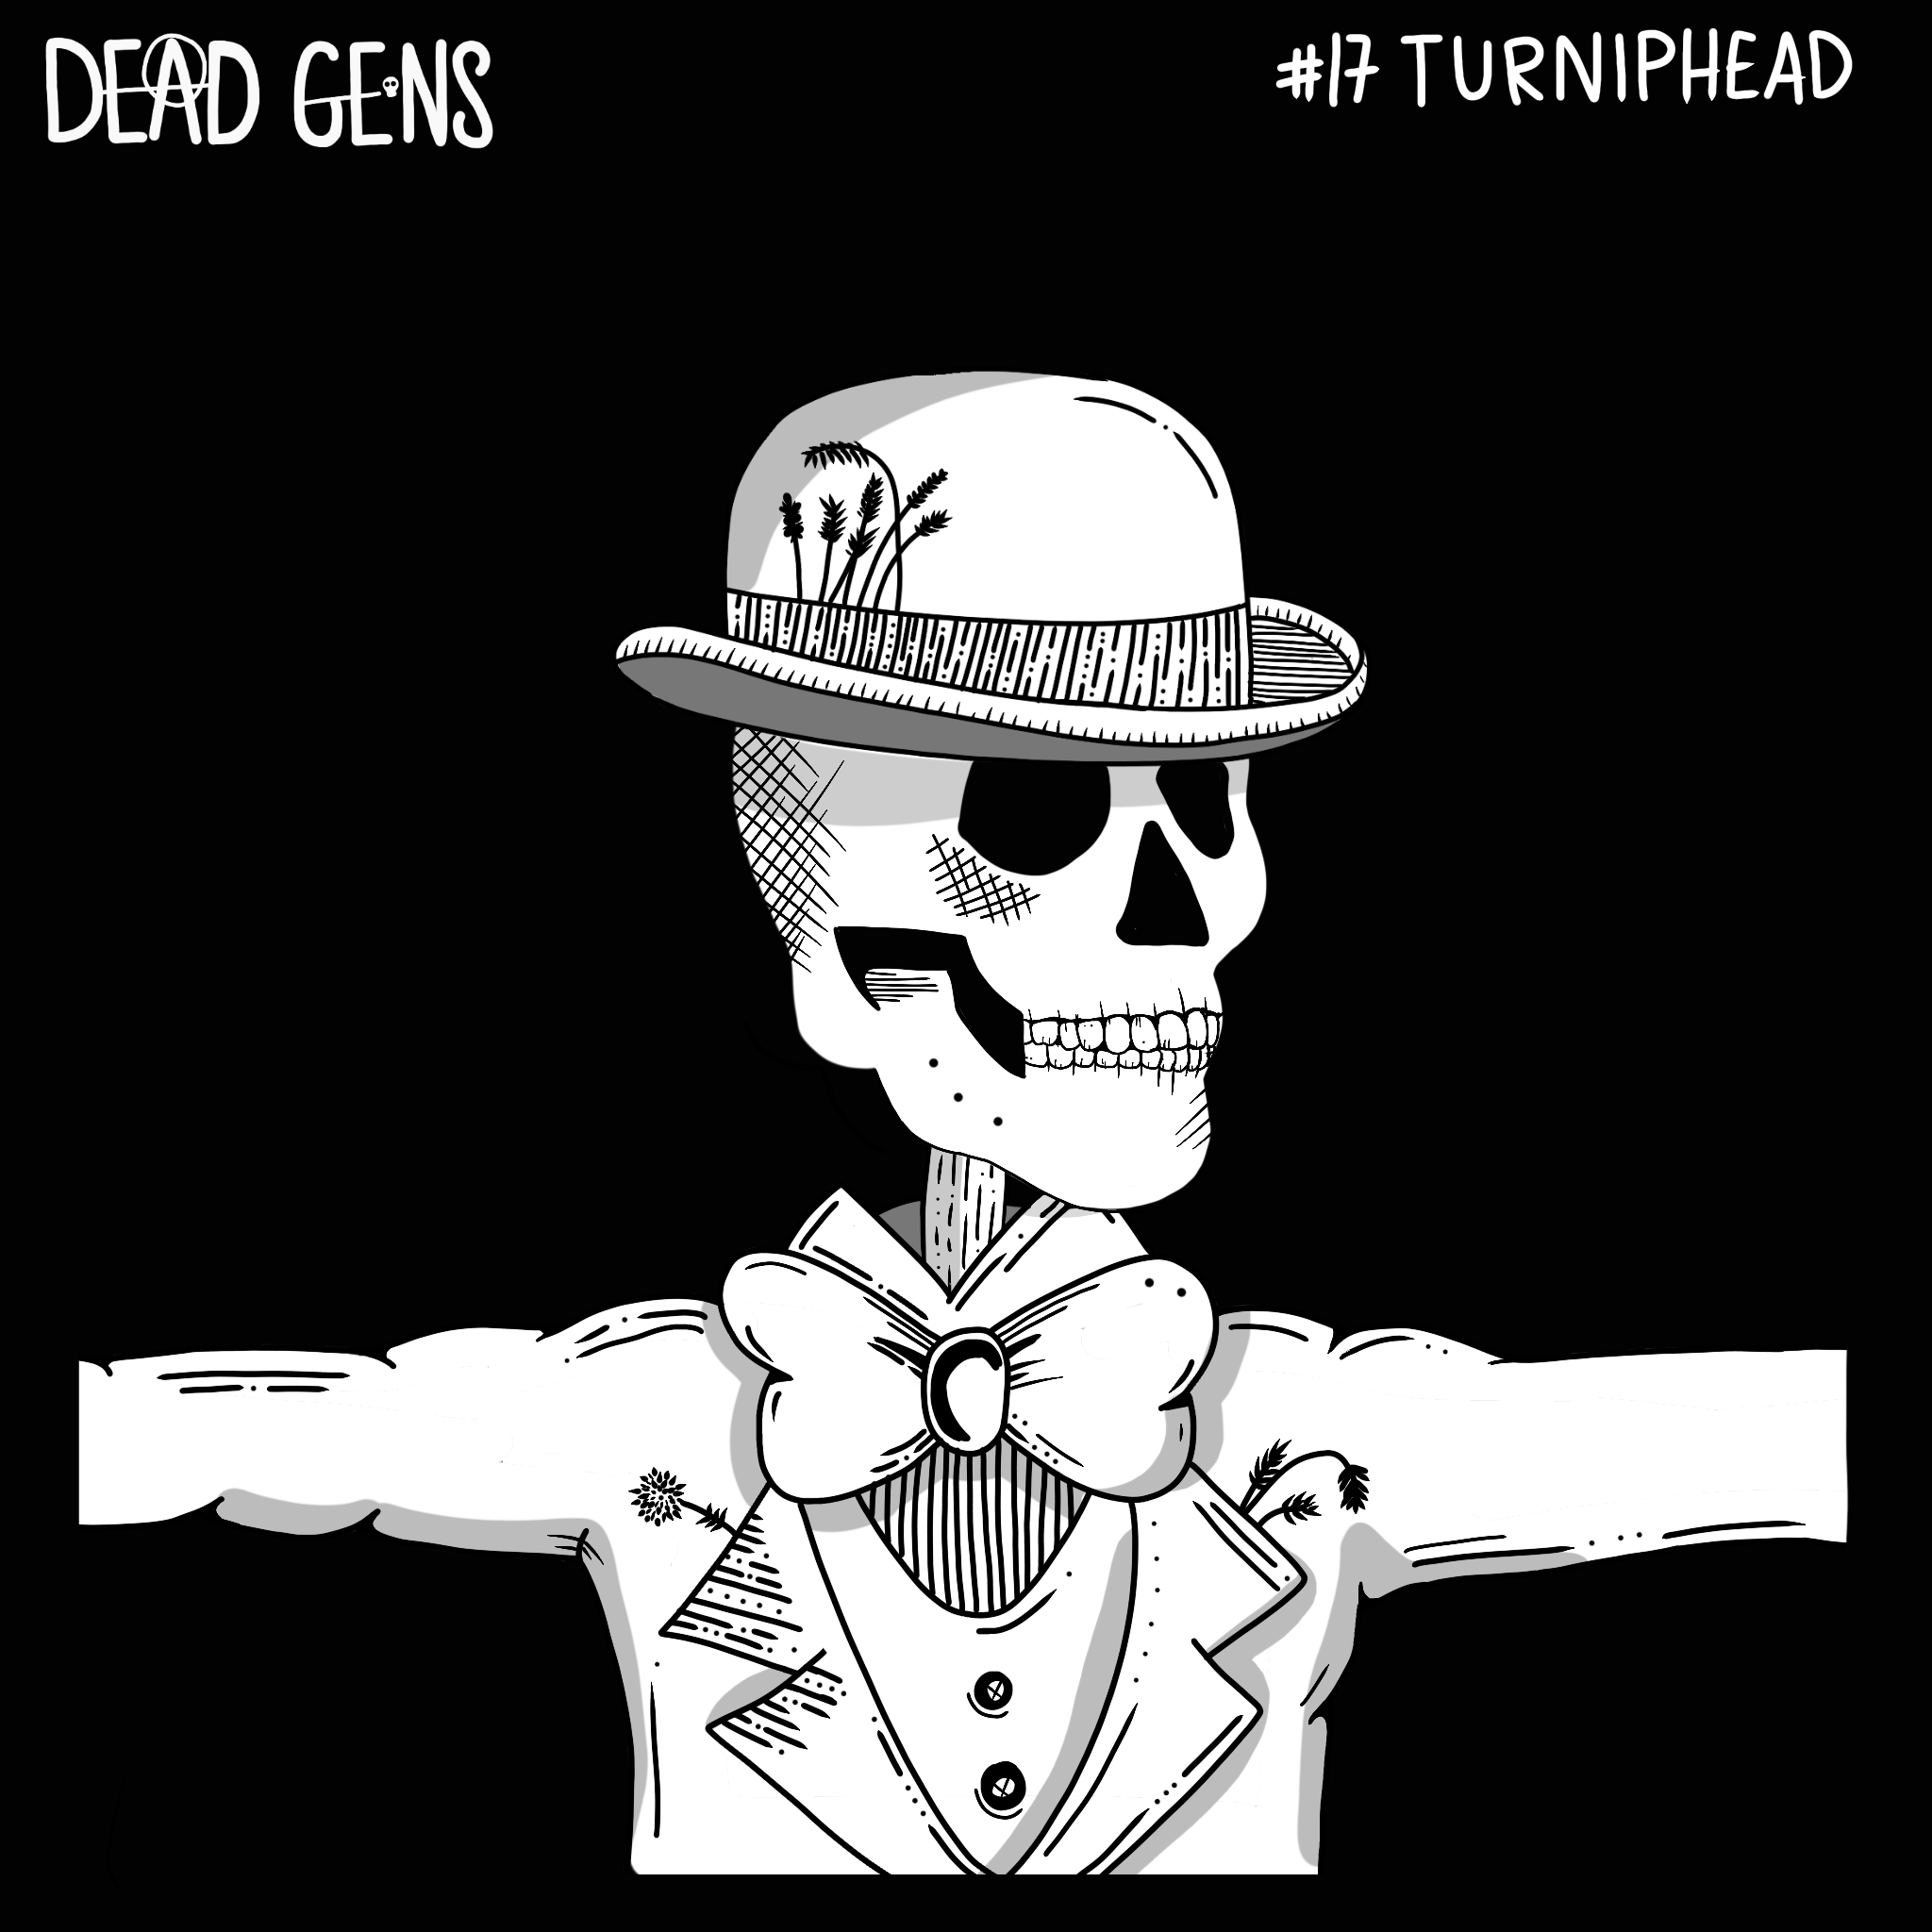 Dead Gen #17